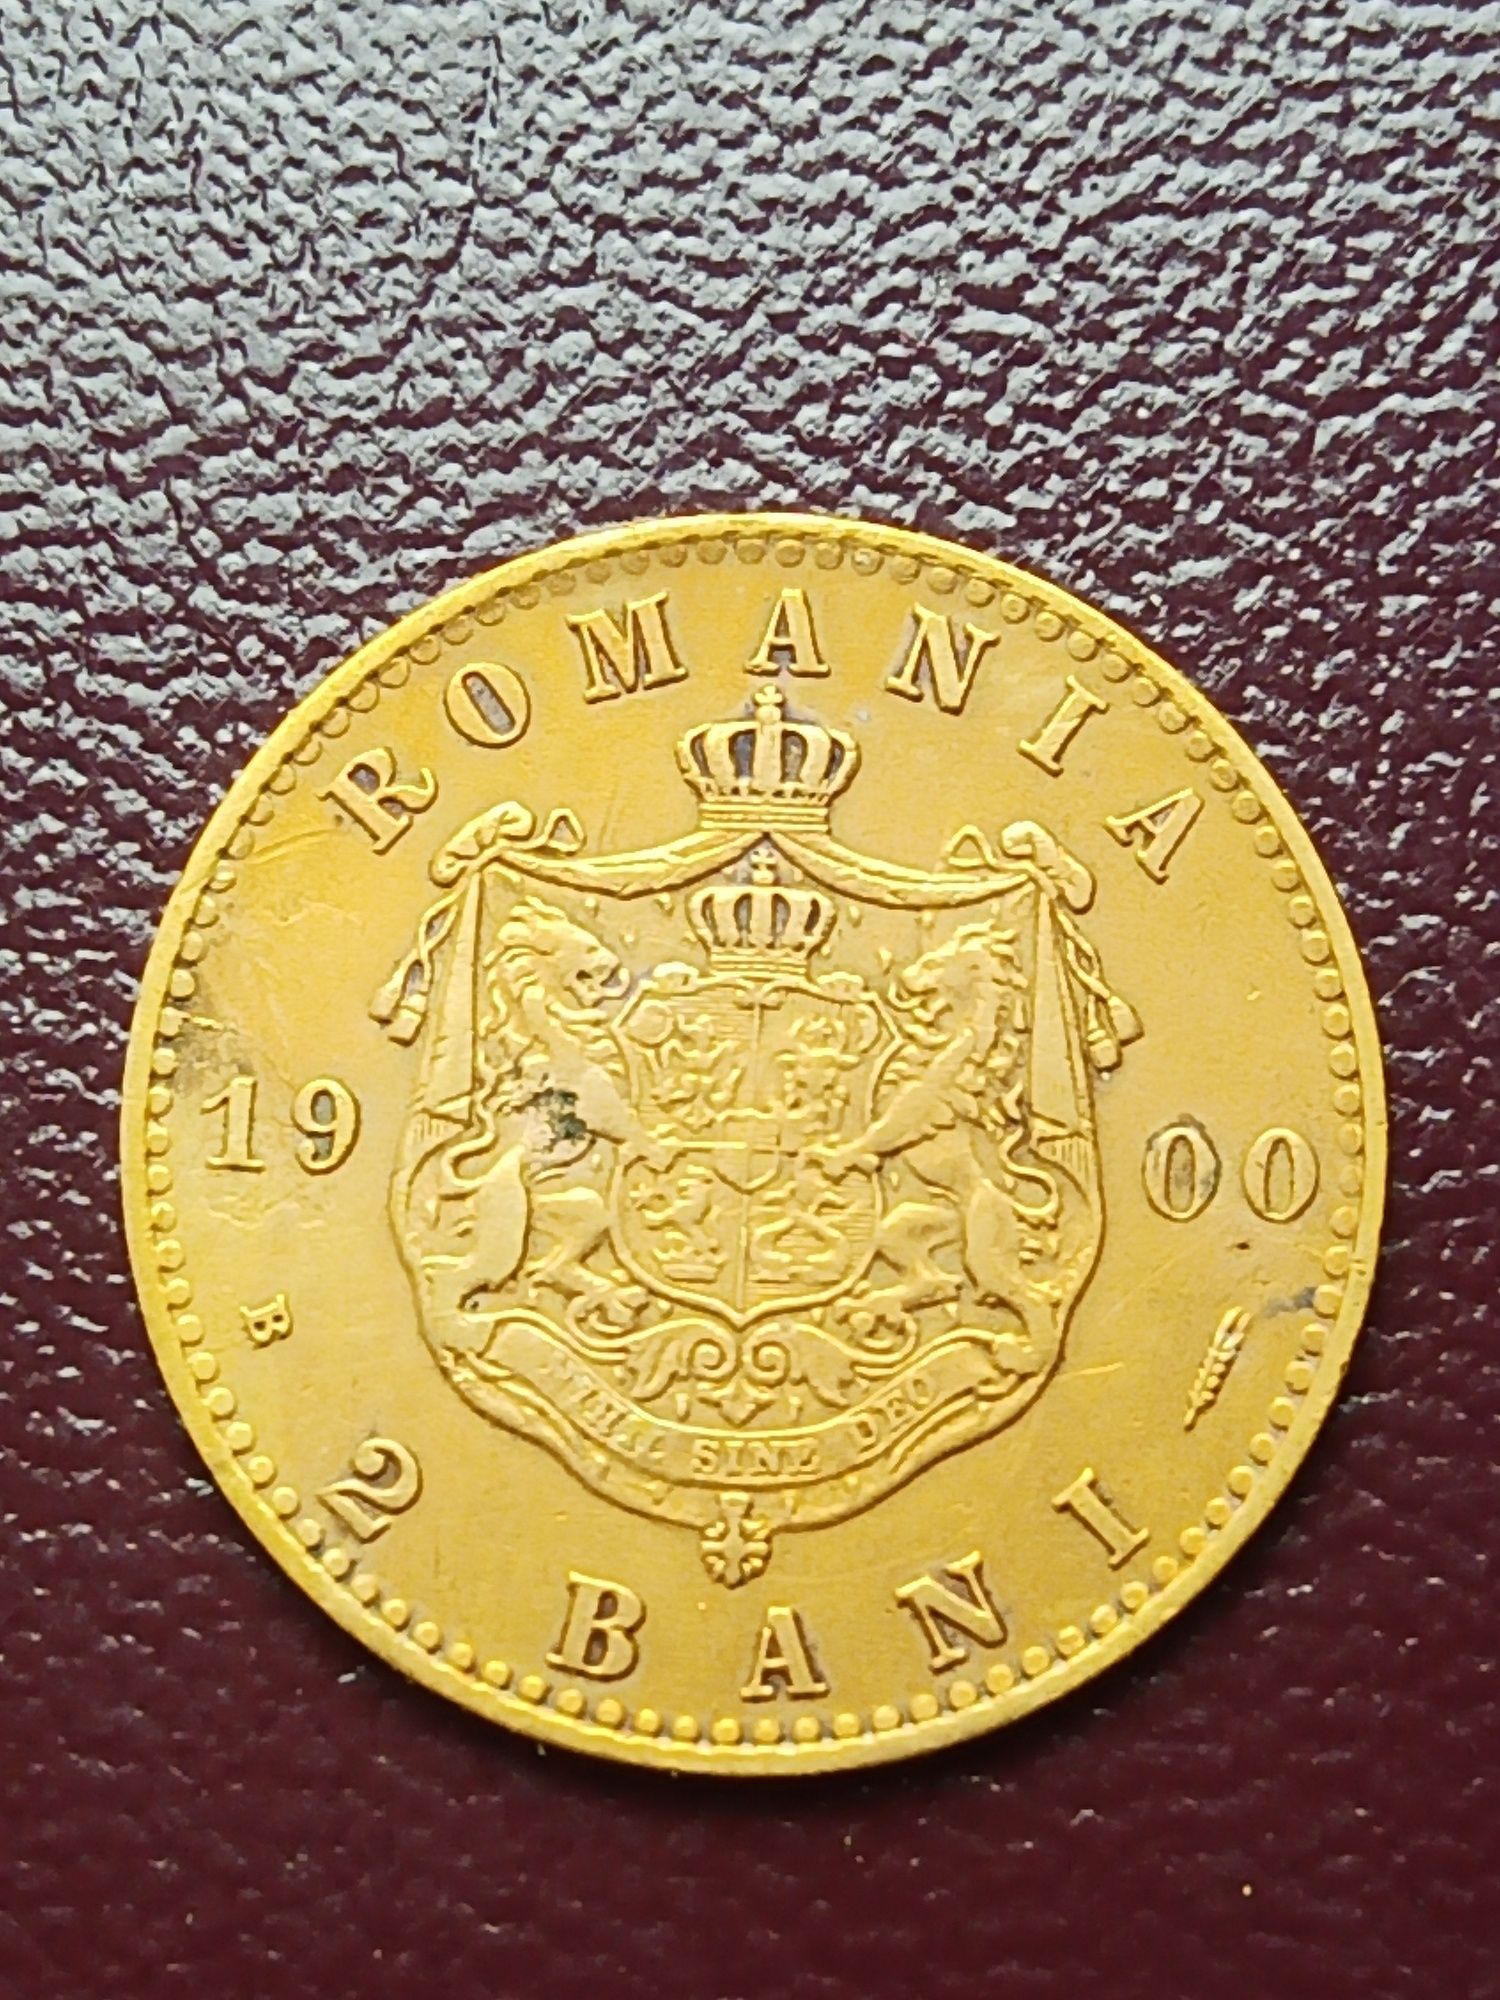 Lot monede Romania